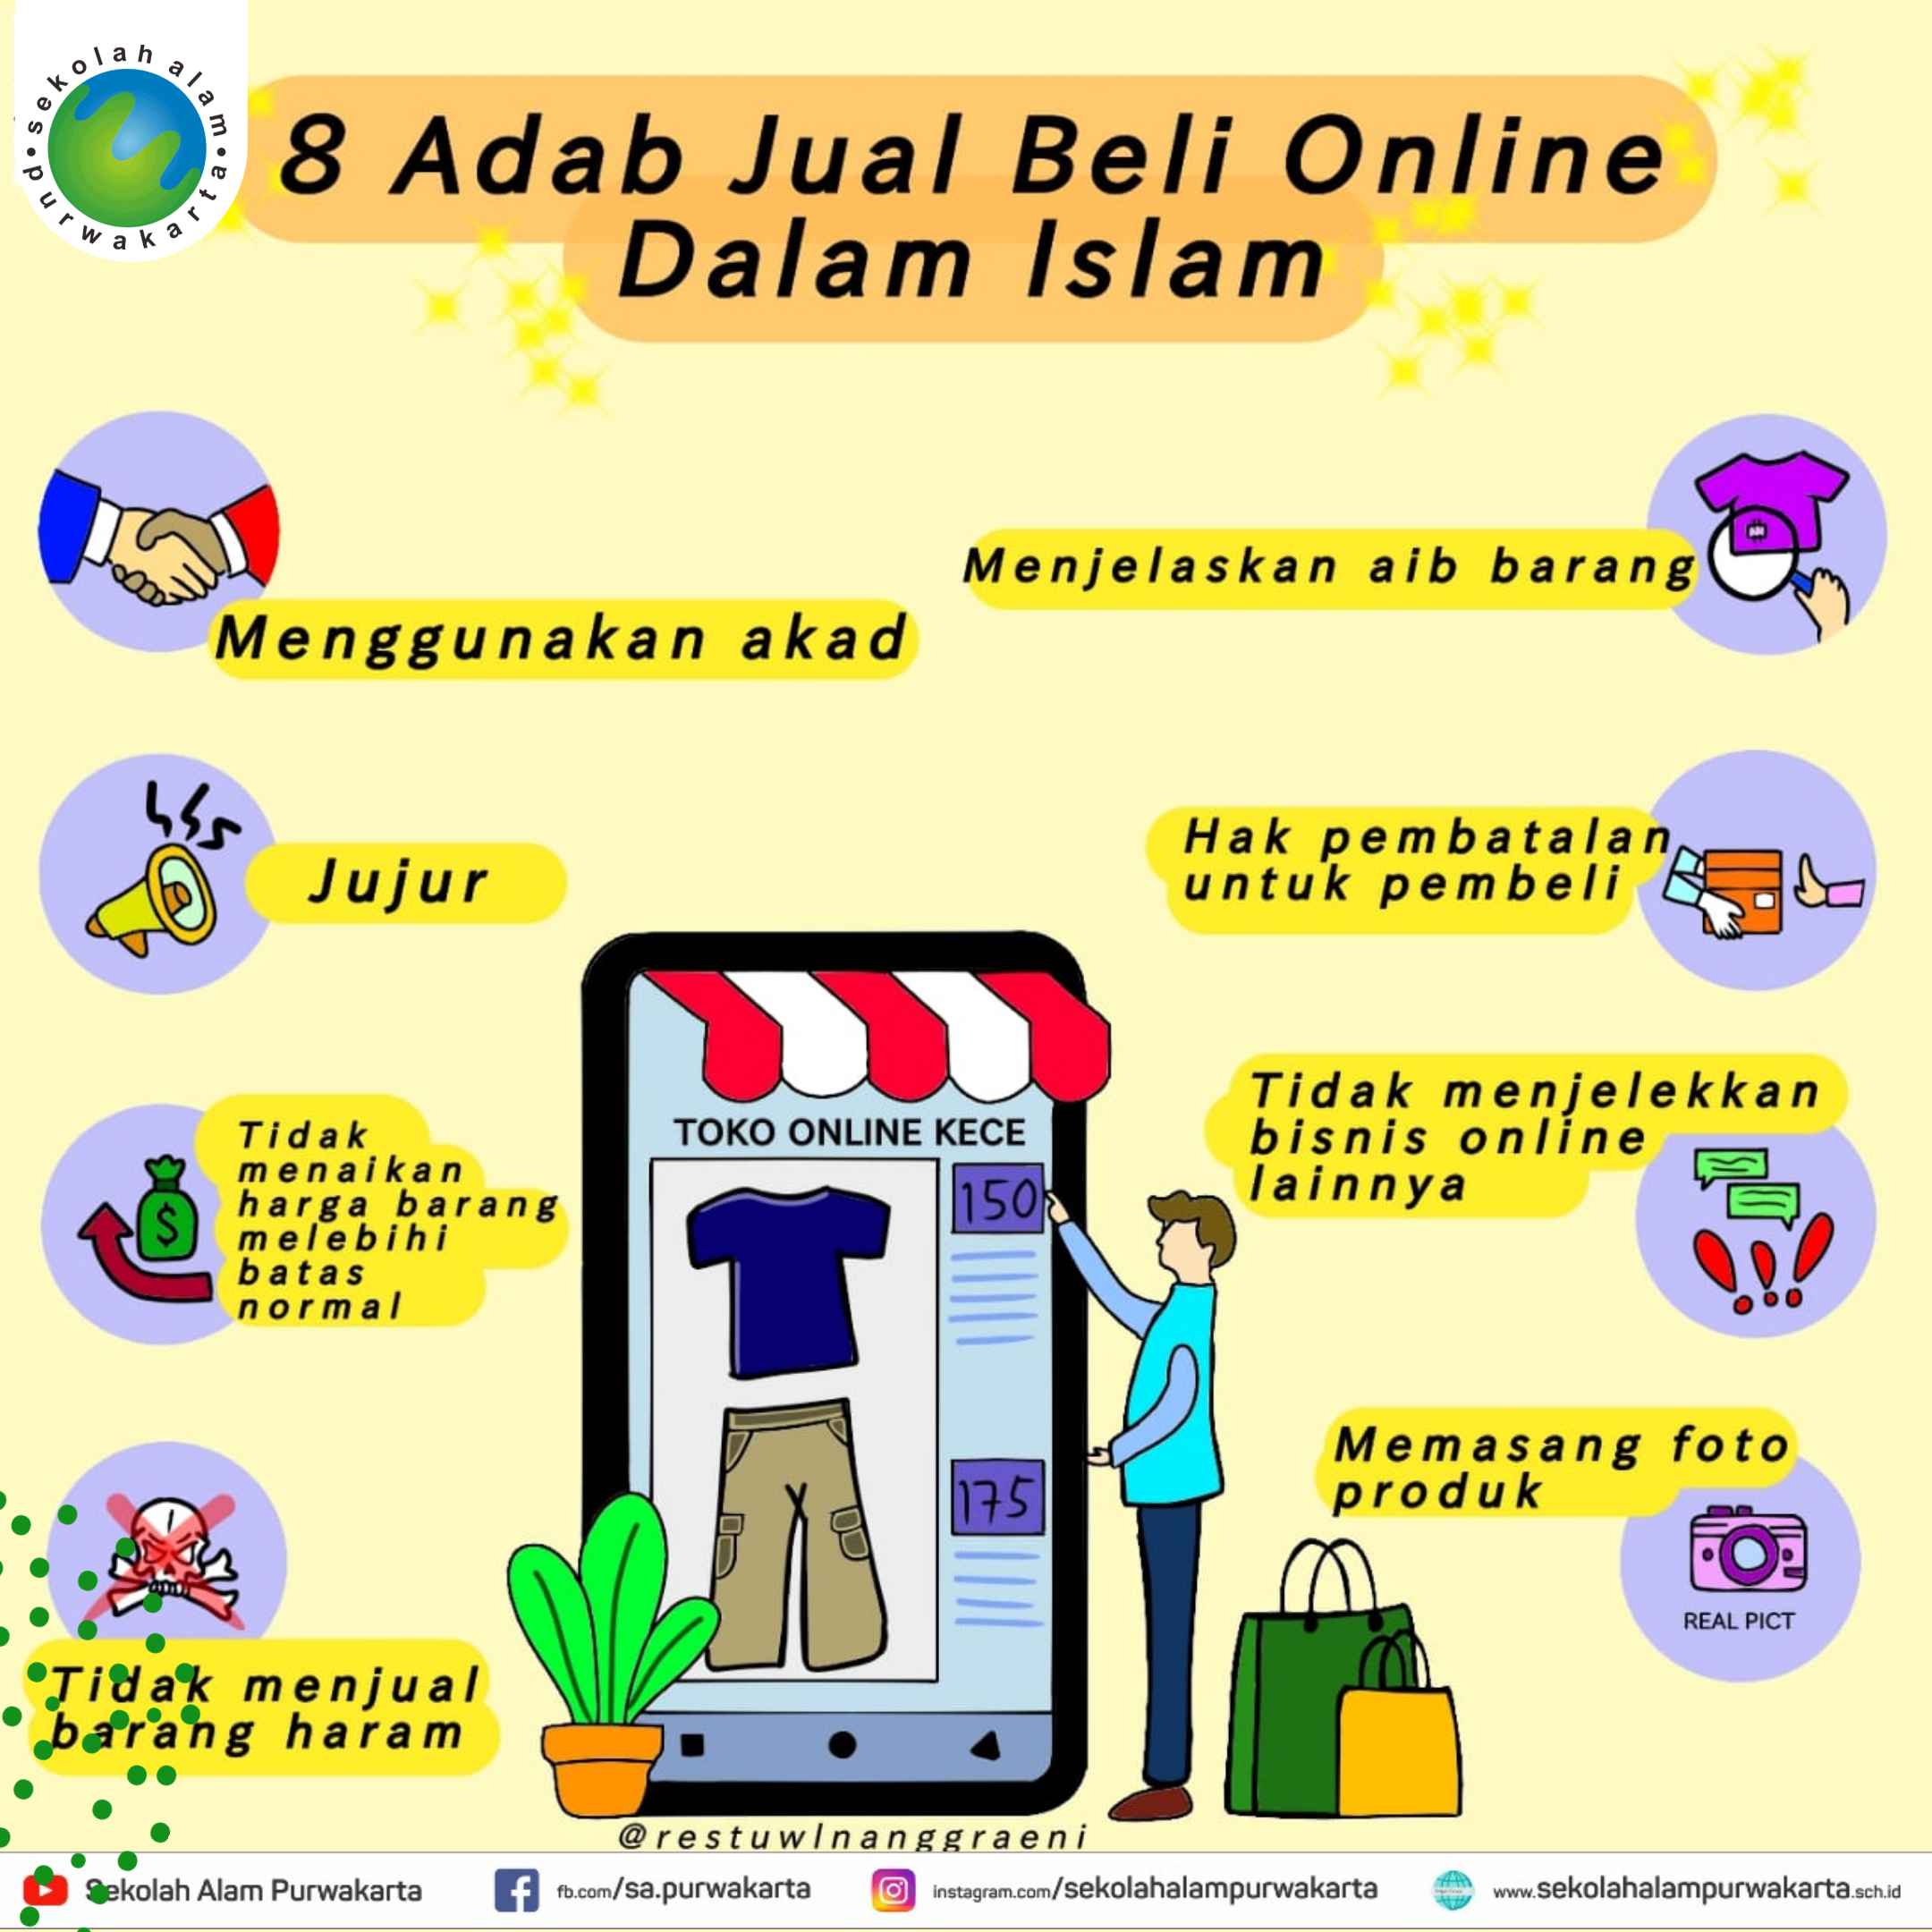 8 Adab Jual Beli Online Dalam Islam